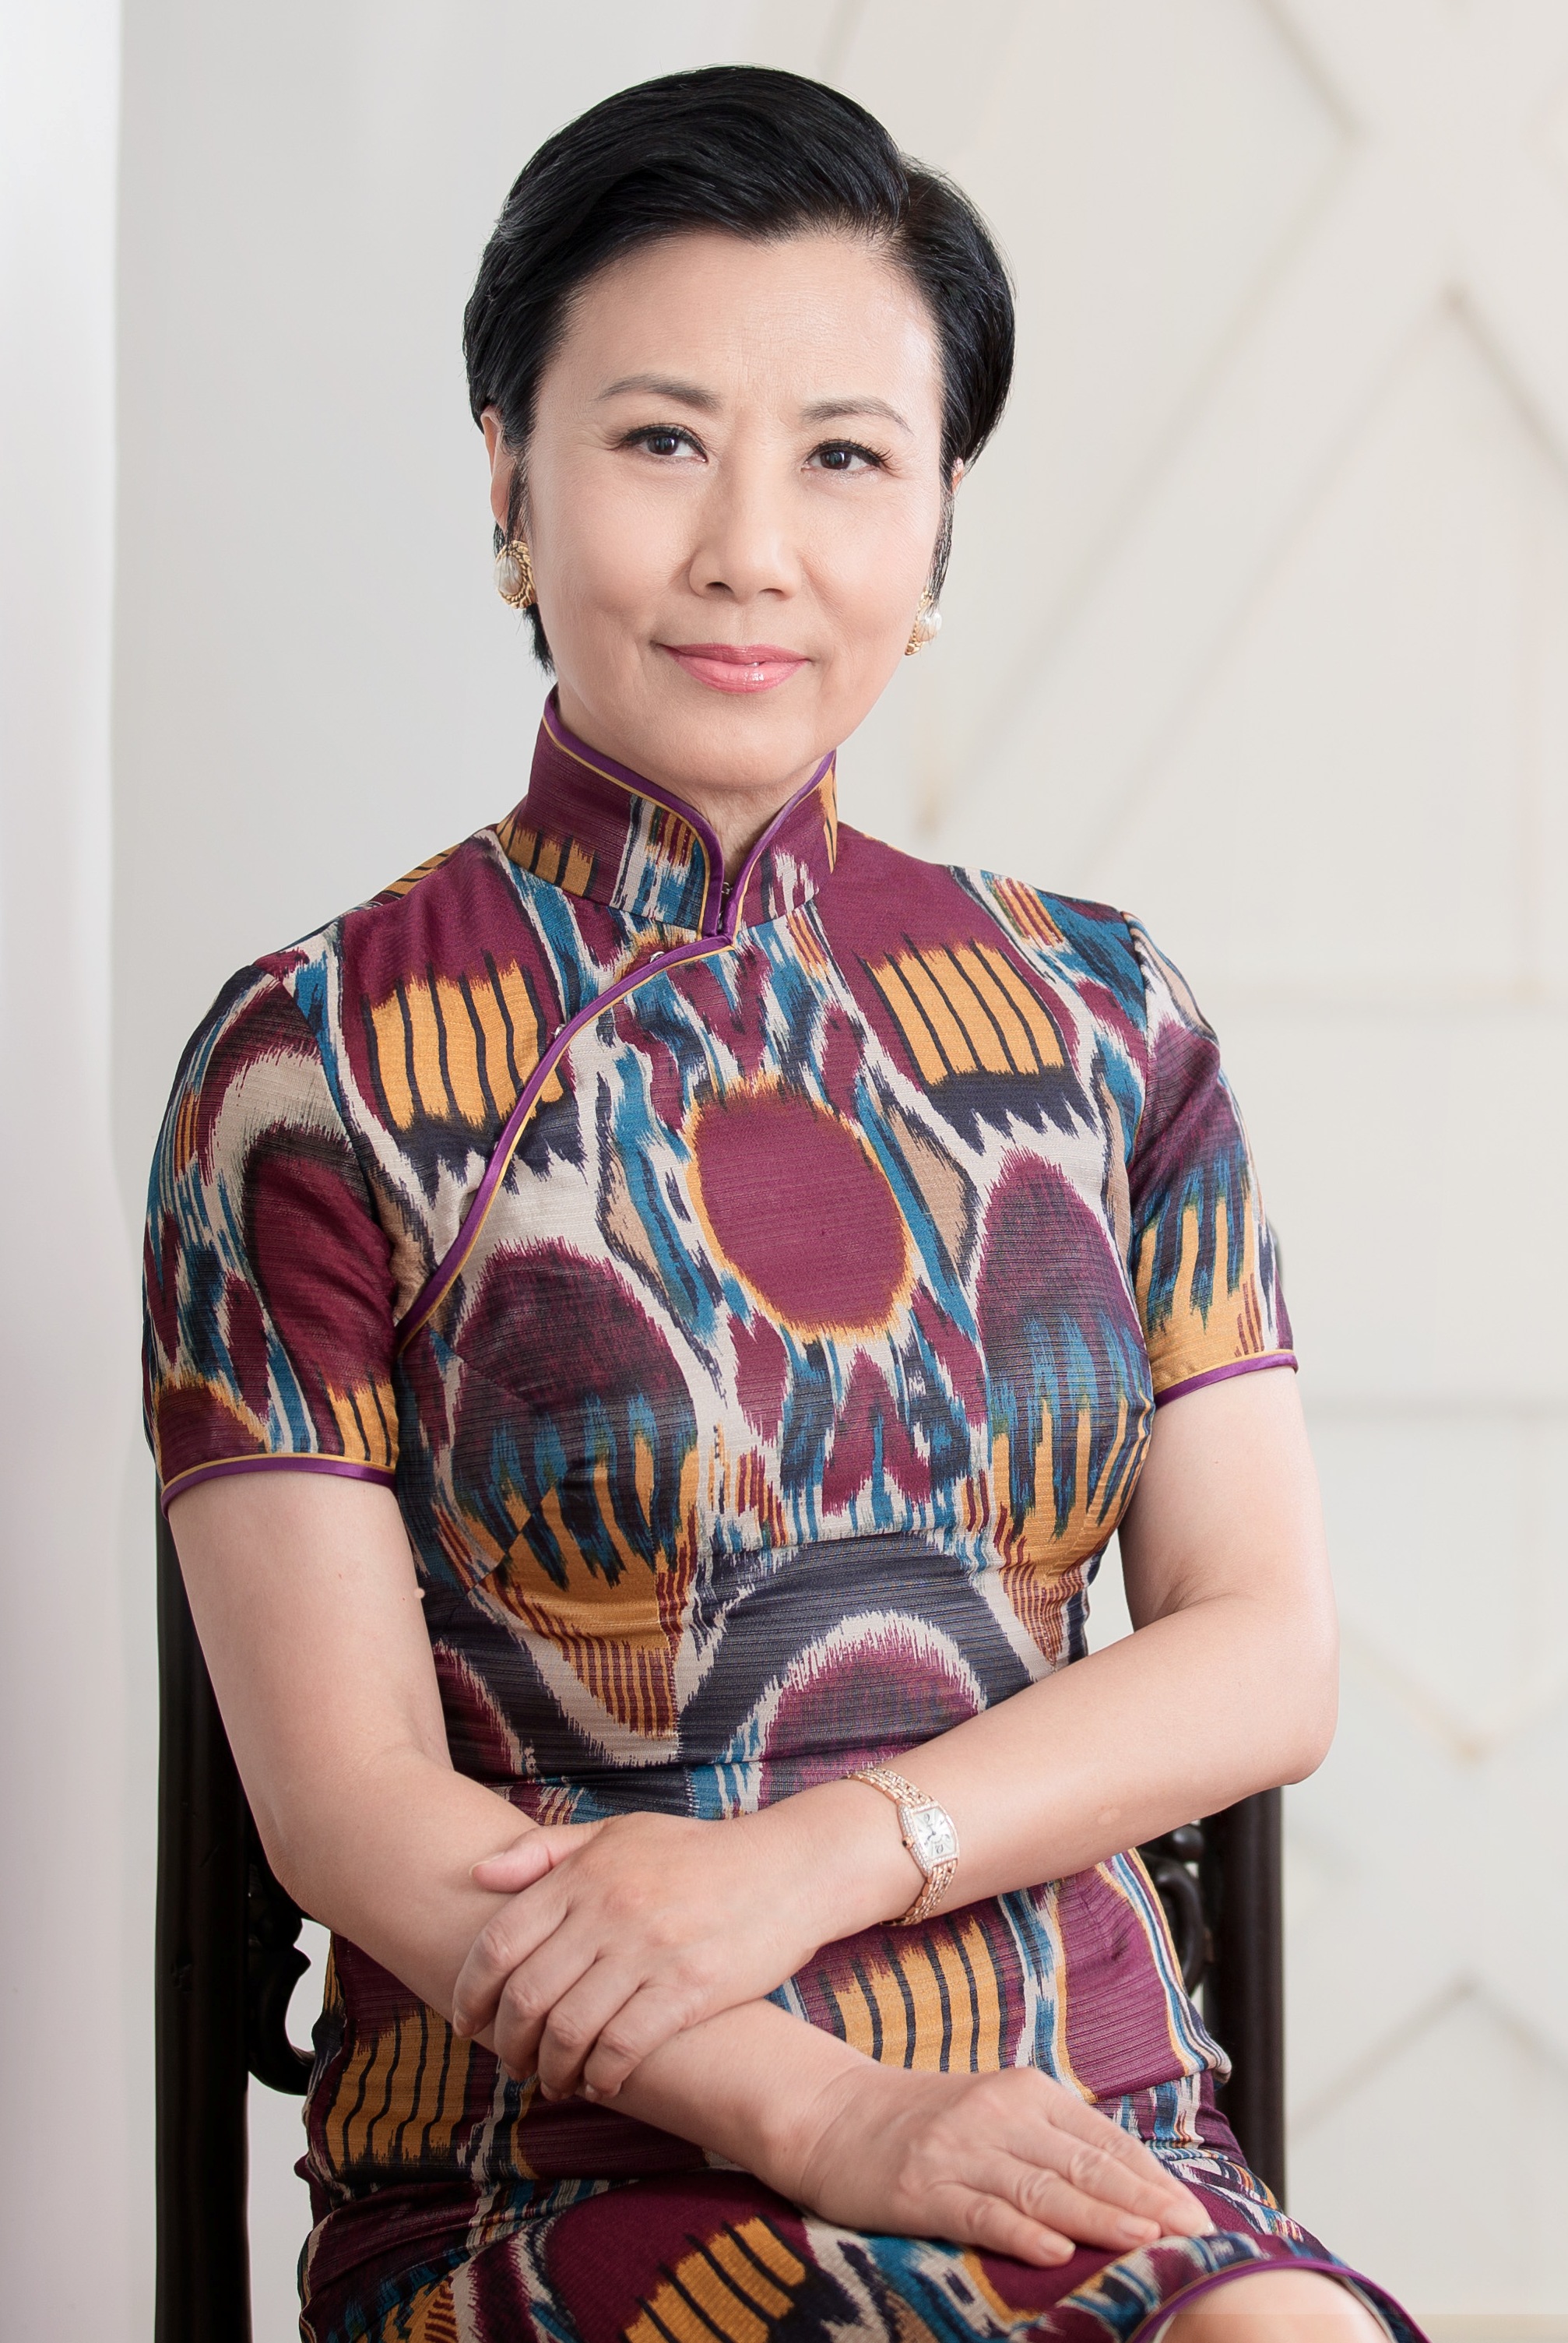 Dr. Liza Wang